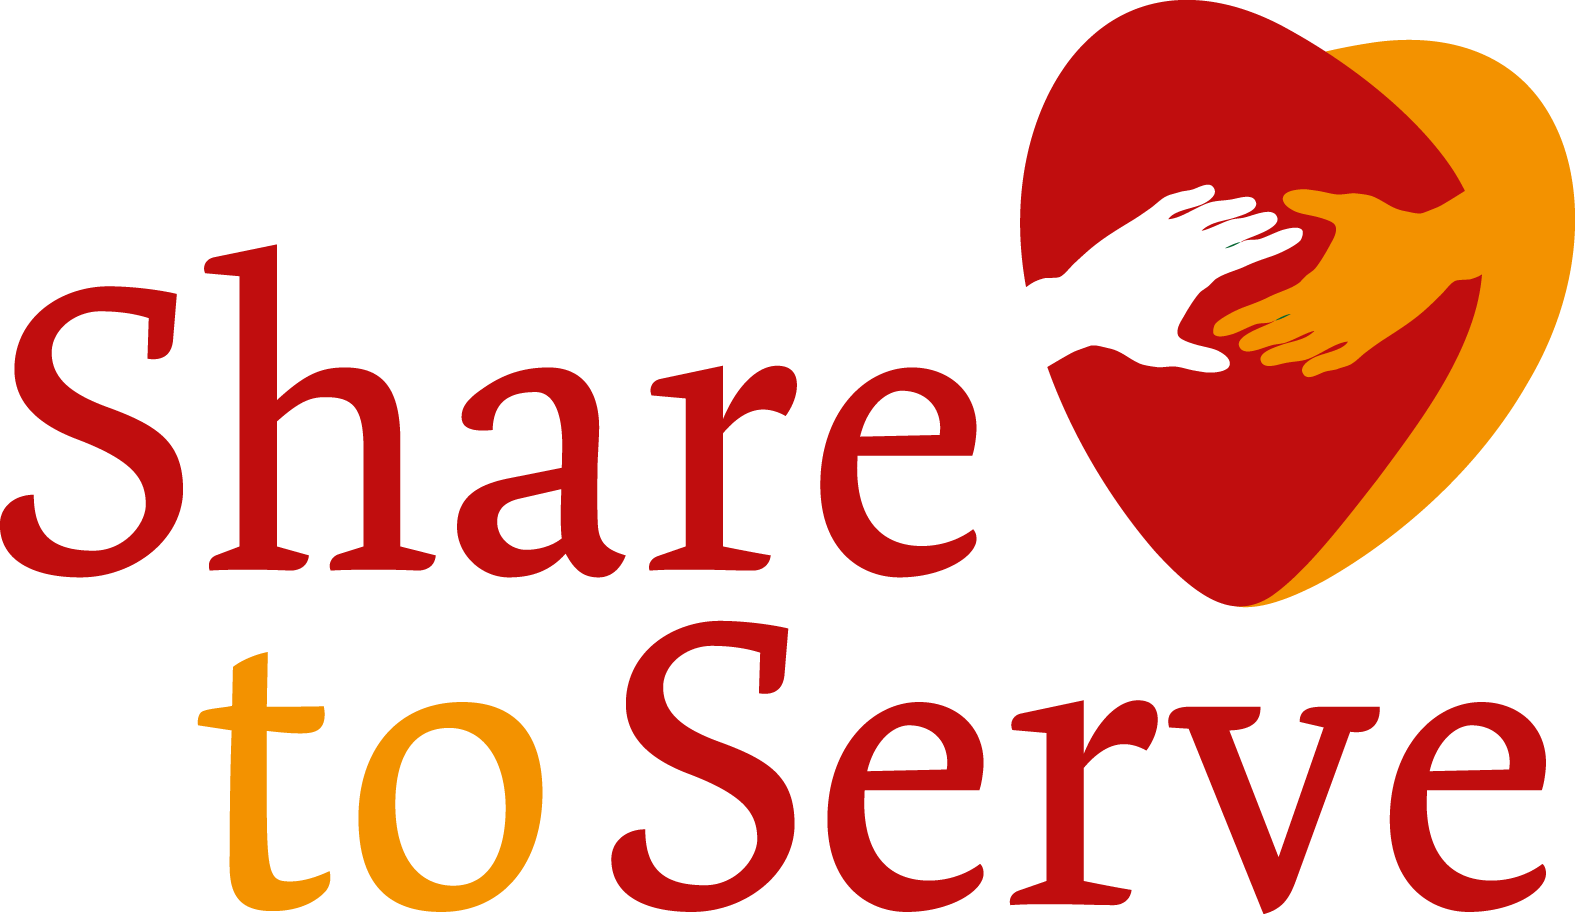 Share to Serve